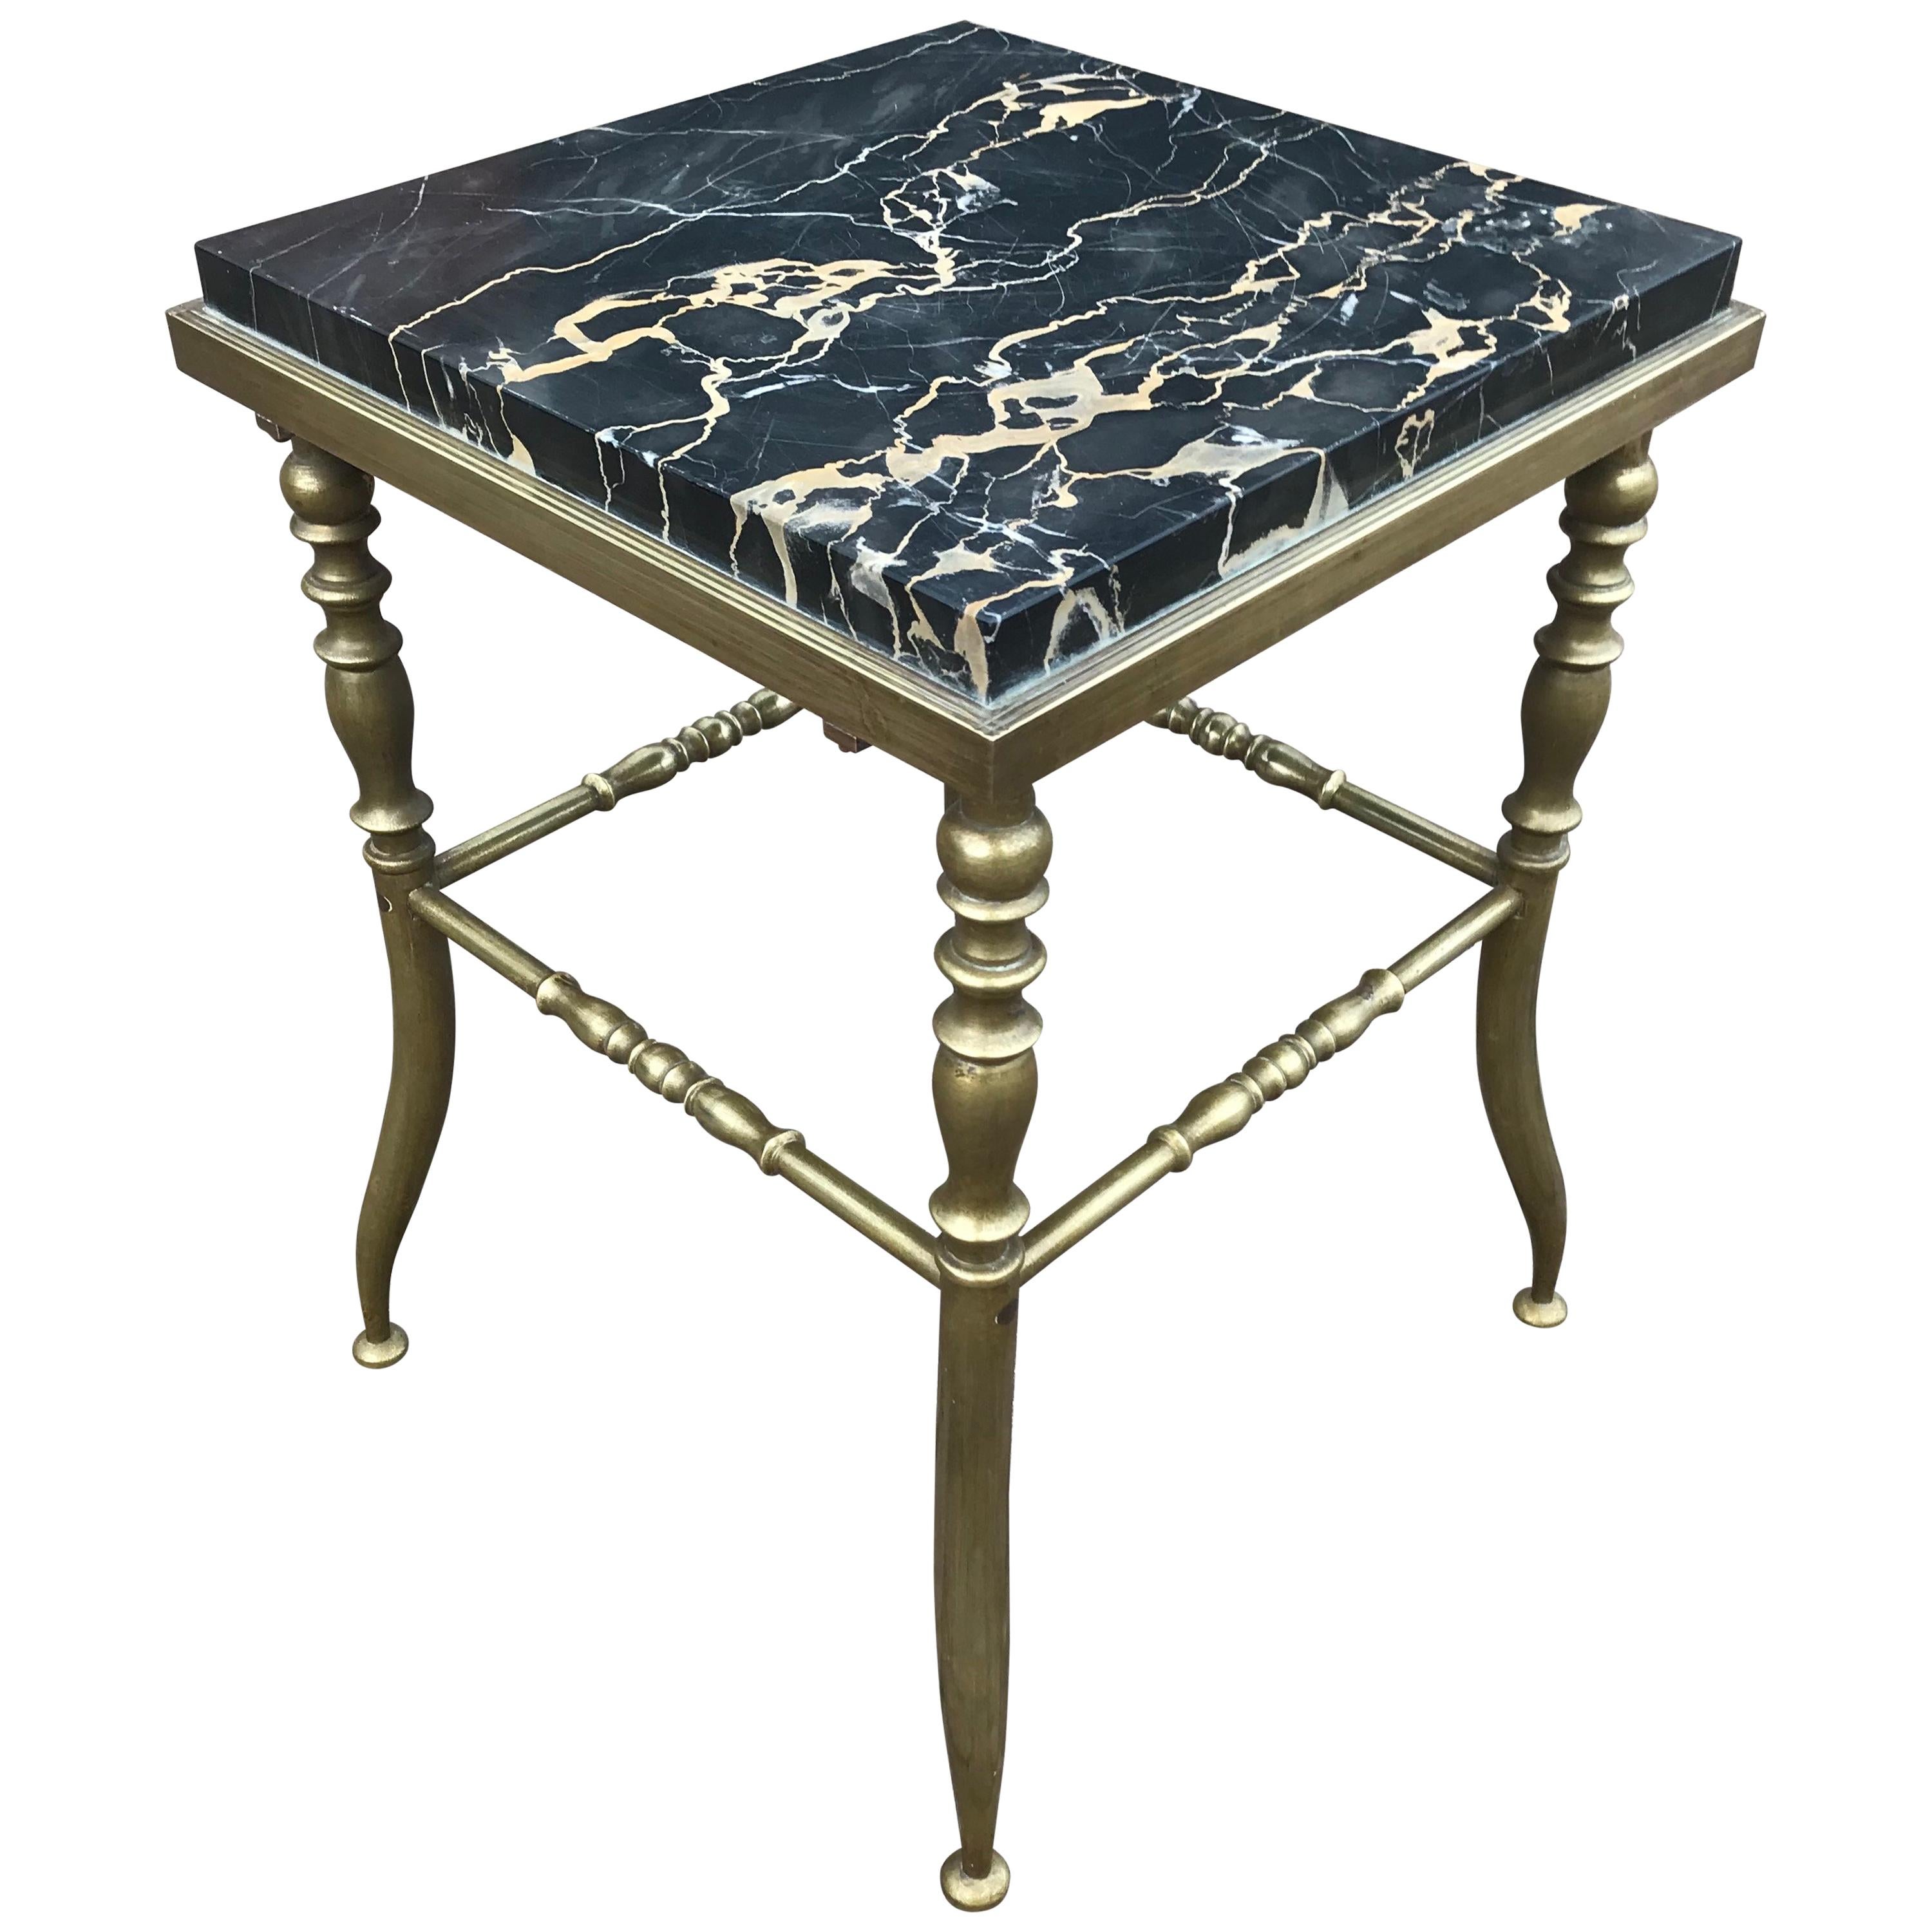 Table de présentation Arts & Crafts de petite taille et élégante table en bronze avec plateau en marbre pour plantes